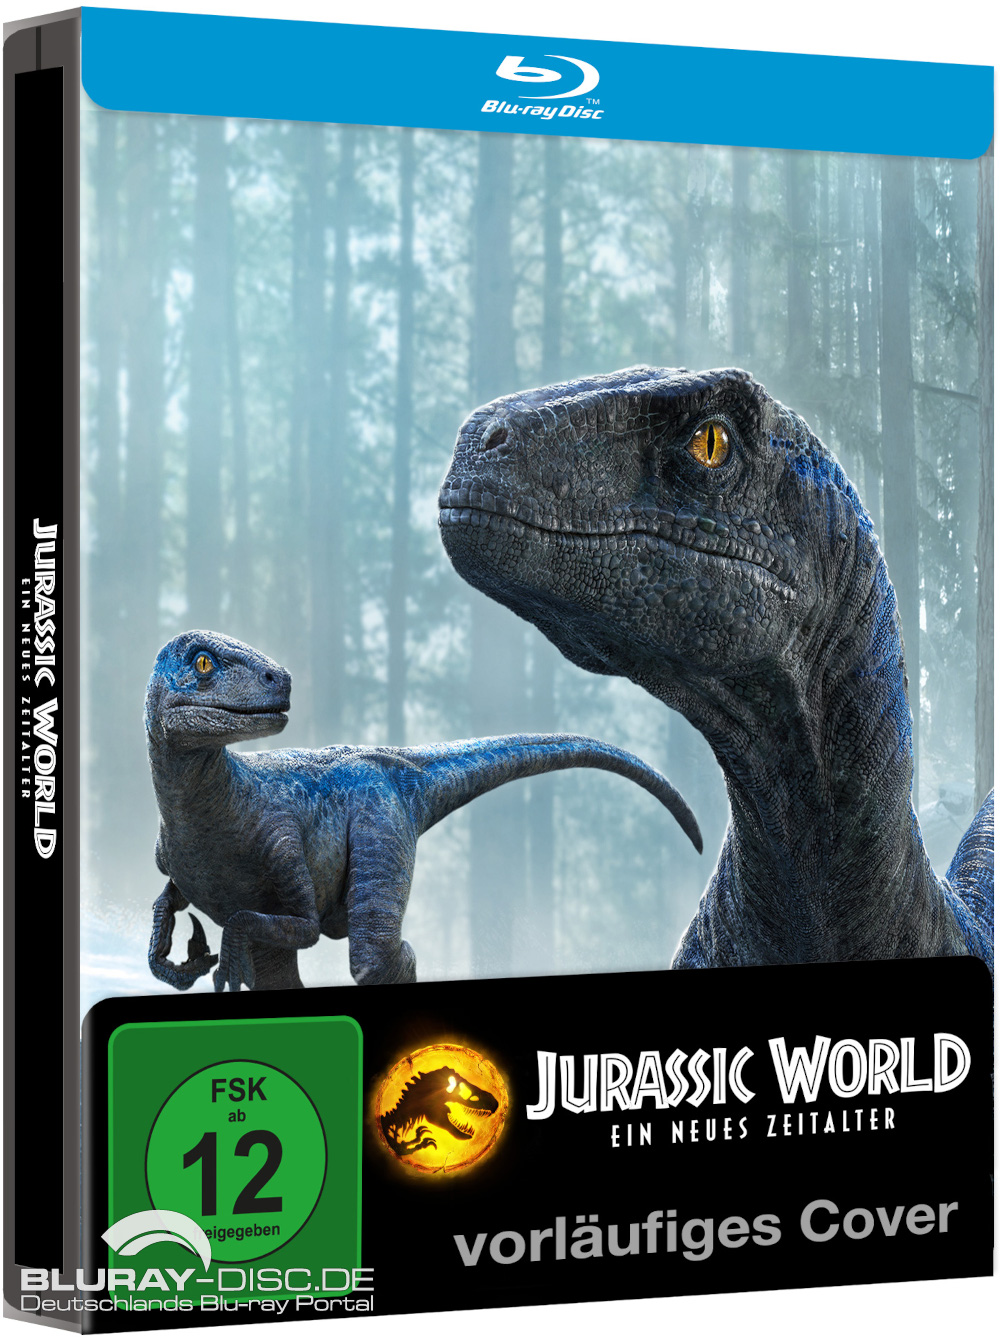 Jurassic-World-Ein-neues-Zeitalter-HD-Steelbook-2-Vorab-Galerie.jpg